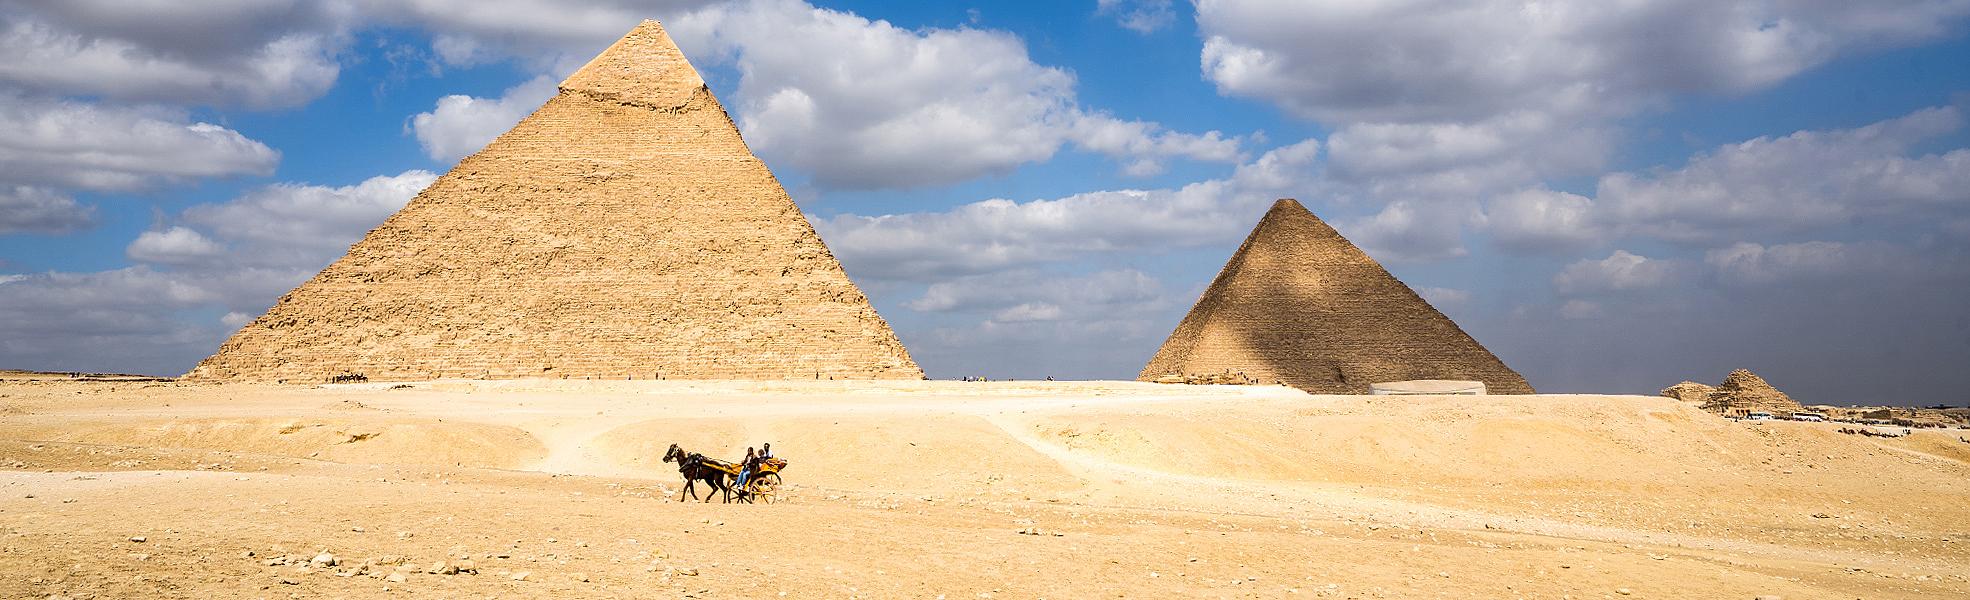 Pirámides y Crucero por el Nilo